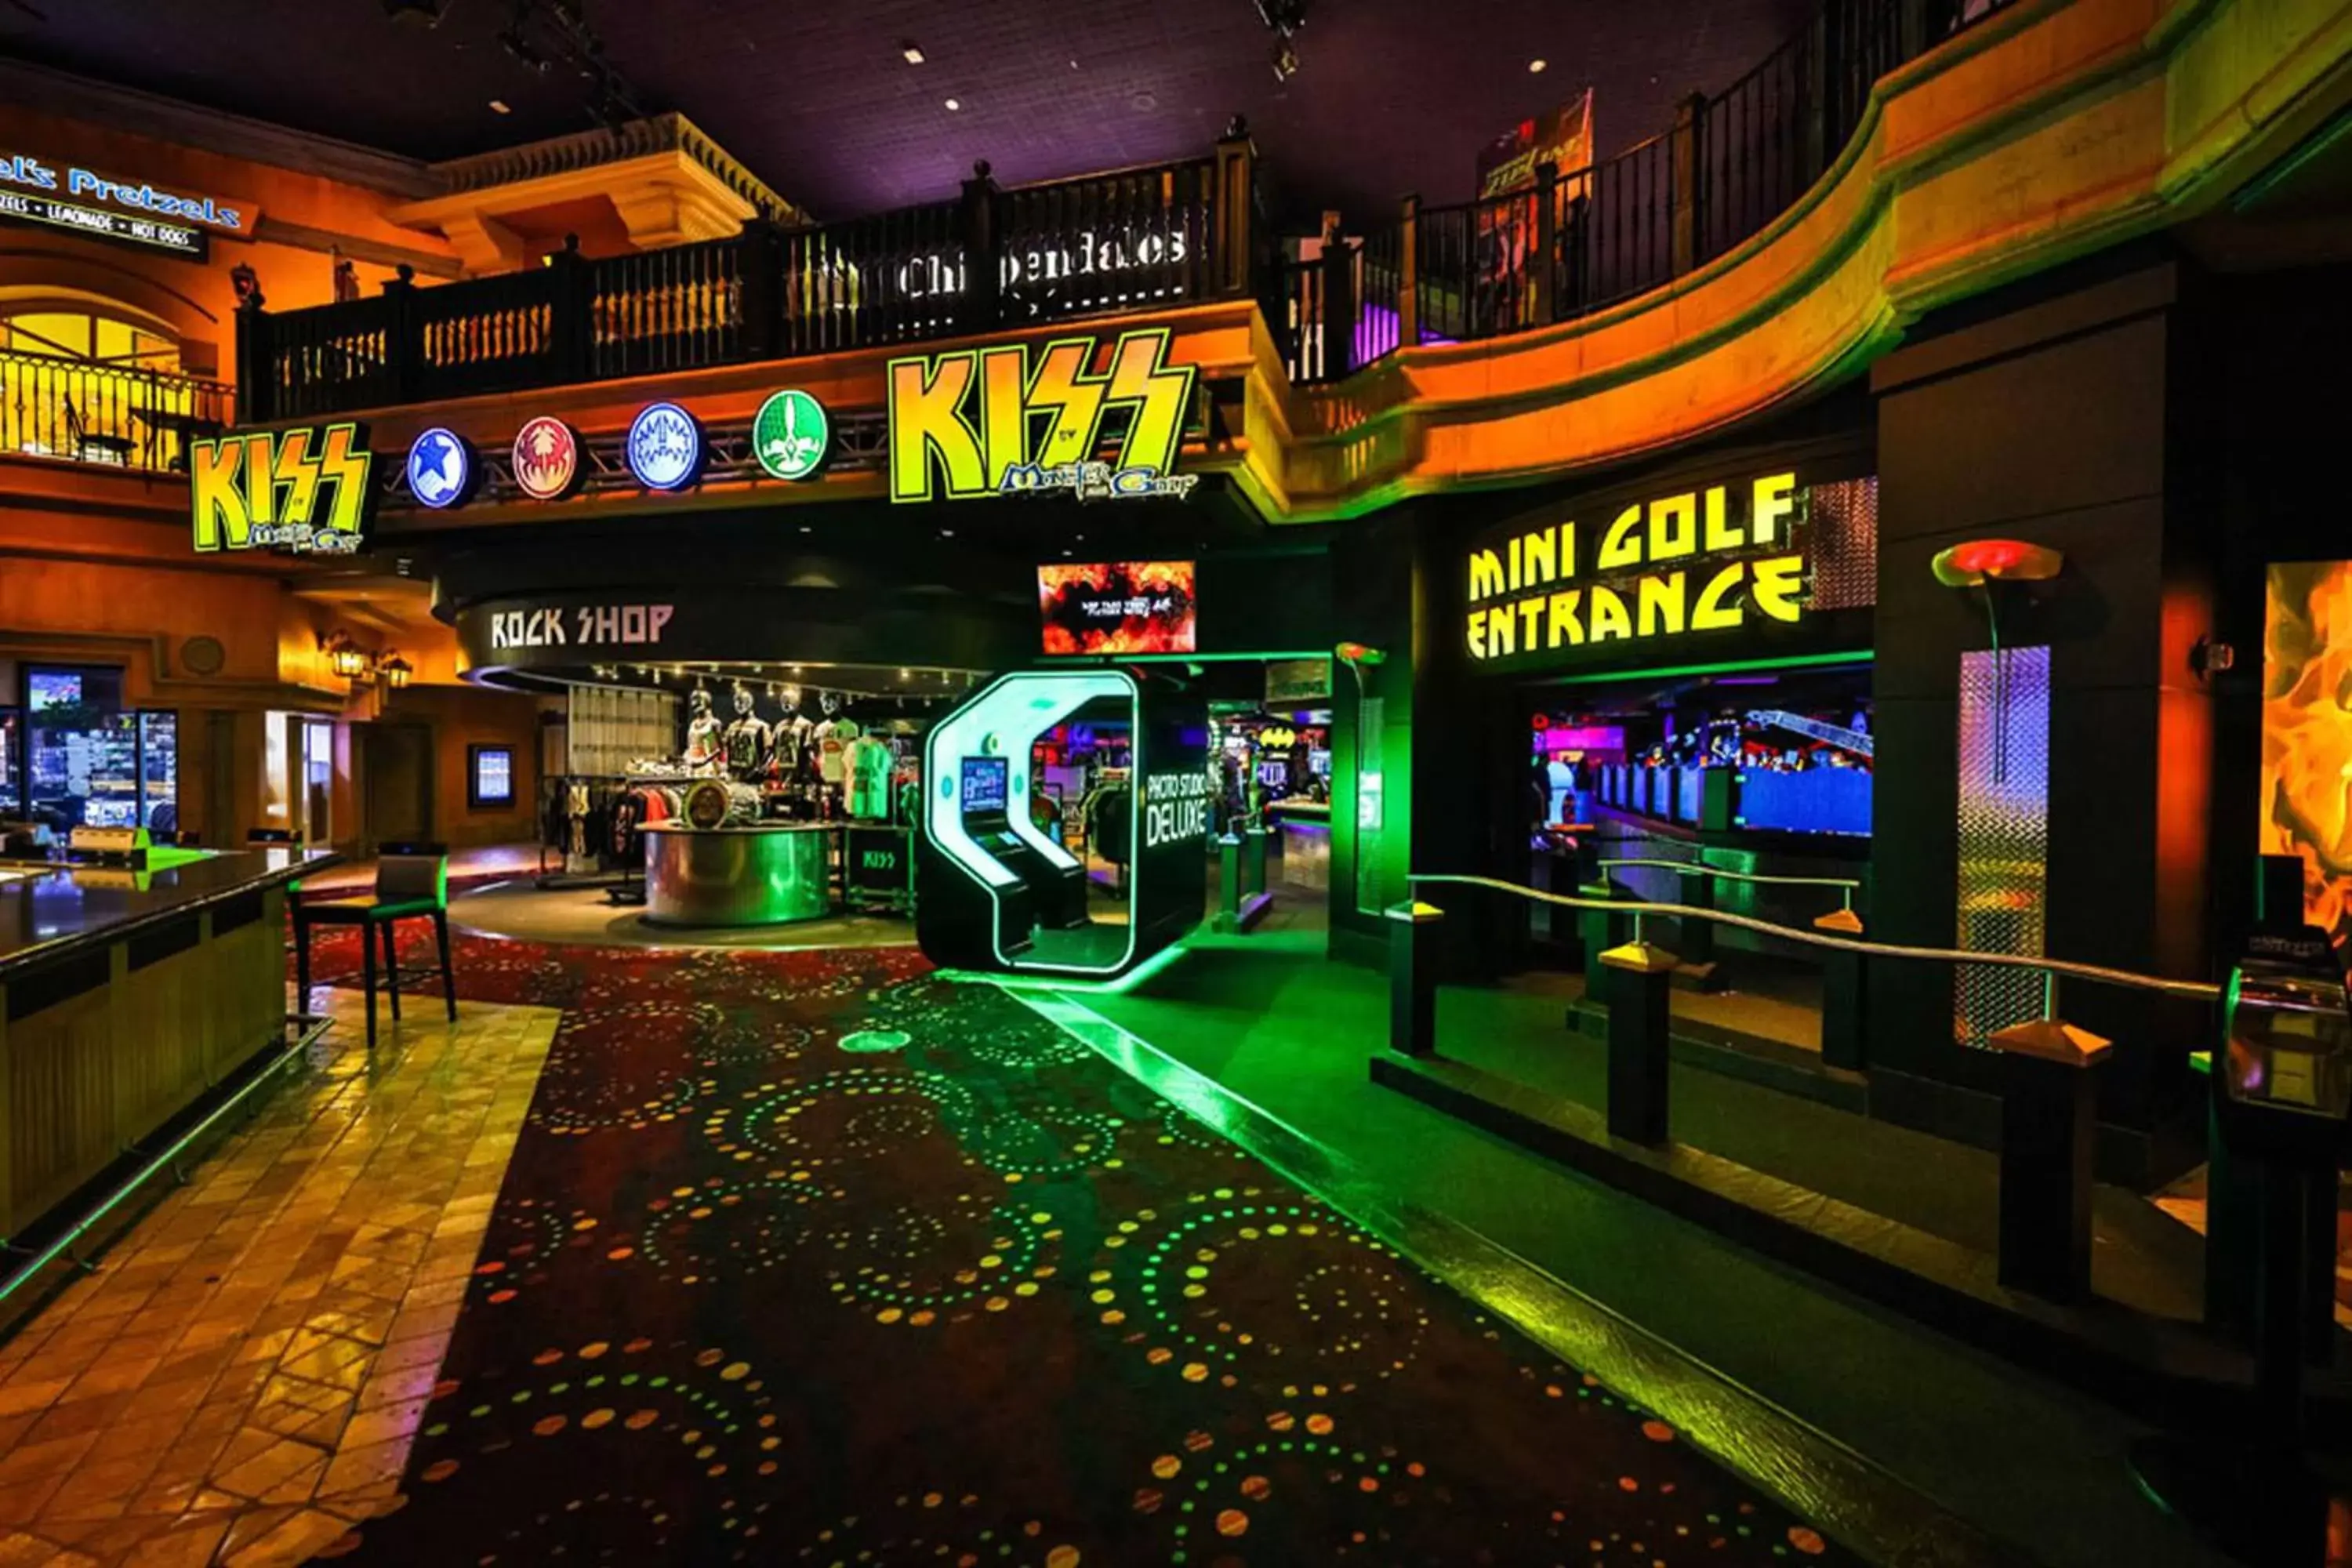 Minigolf in Rio All-Suite Hotel & Casino